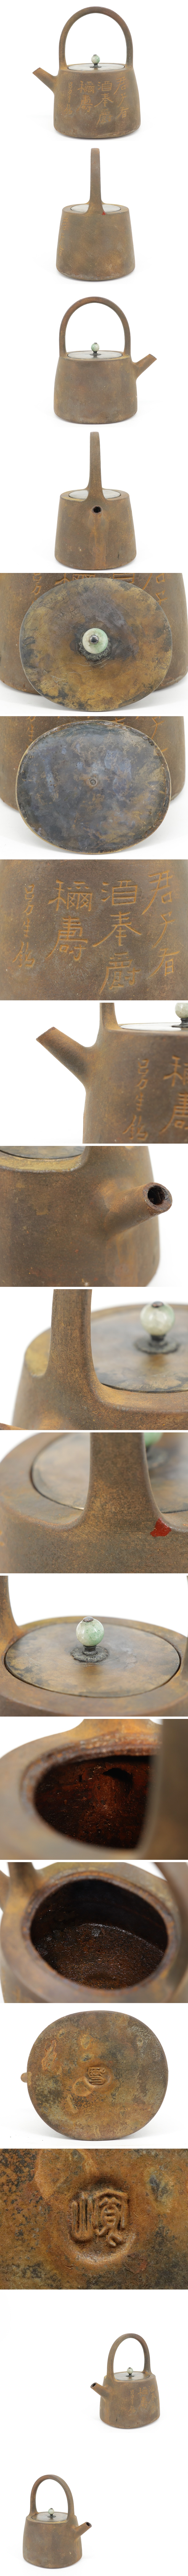 受注可煎茶道具 漢詩文 土器式 鉄瓶 在印在銘 銅蓋 湯沸 A136 鉄瓶